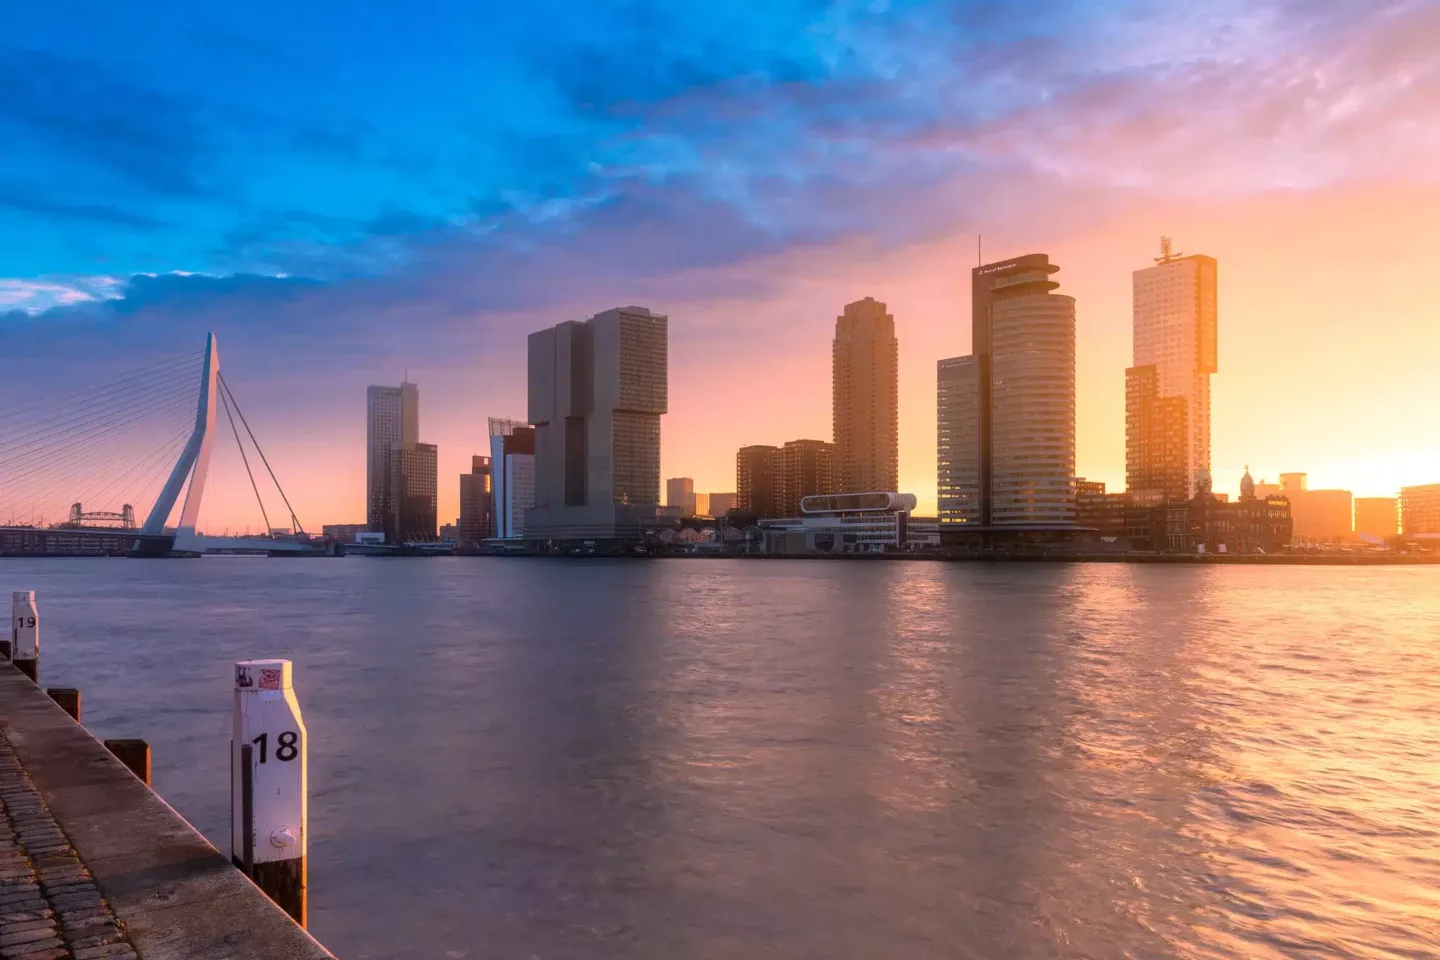 Mooie zonsopkomst met skyline Rotterdam